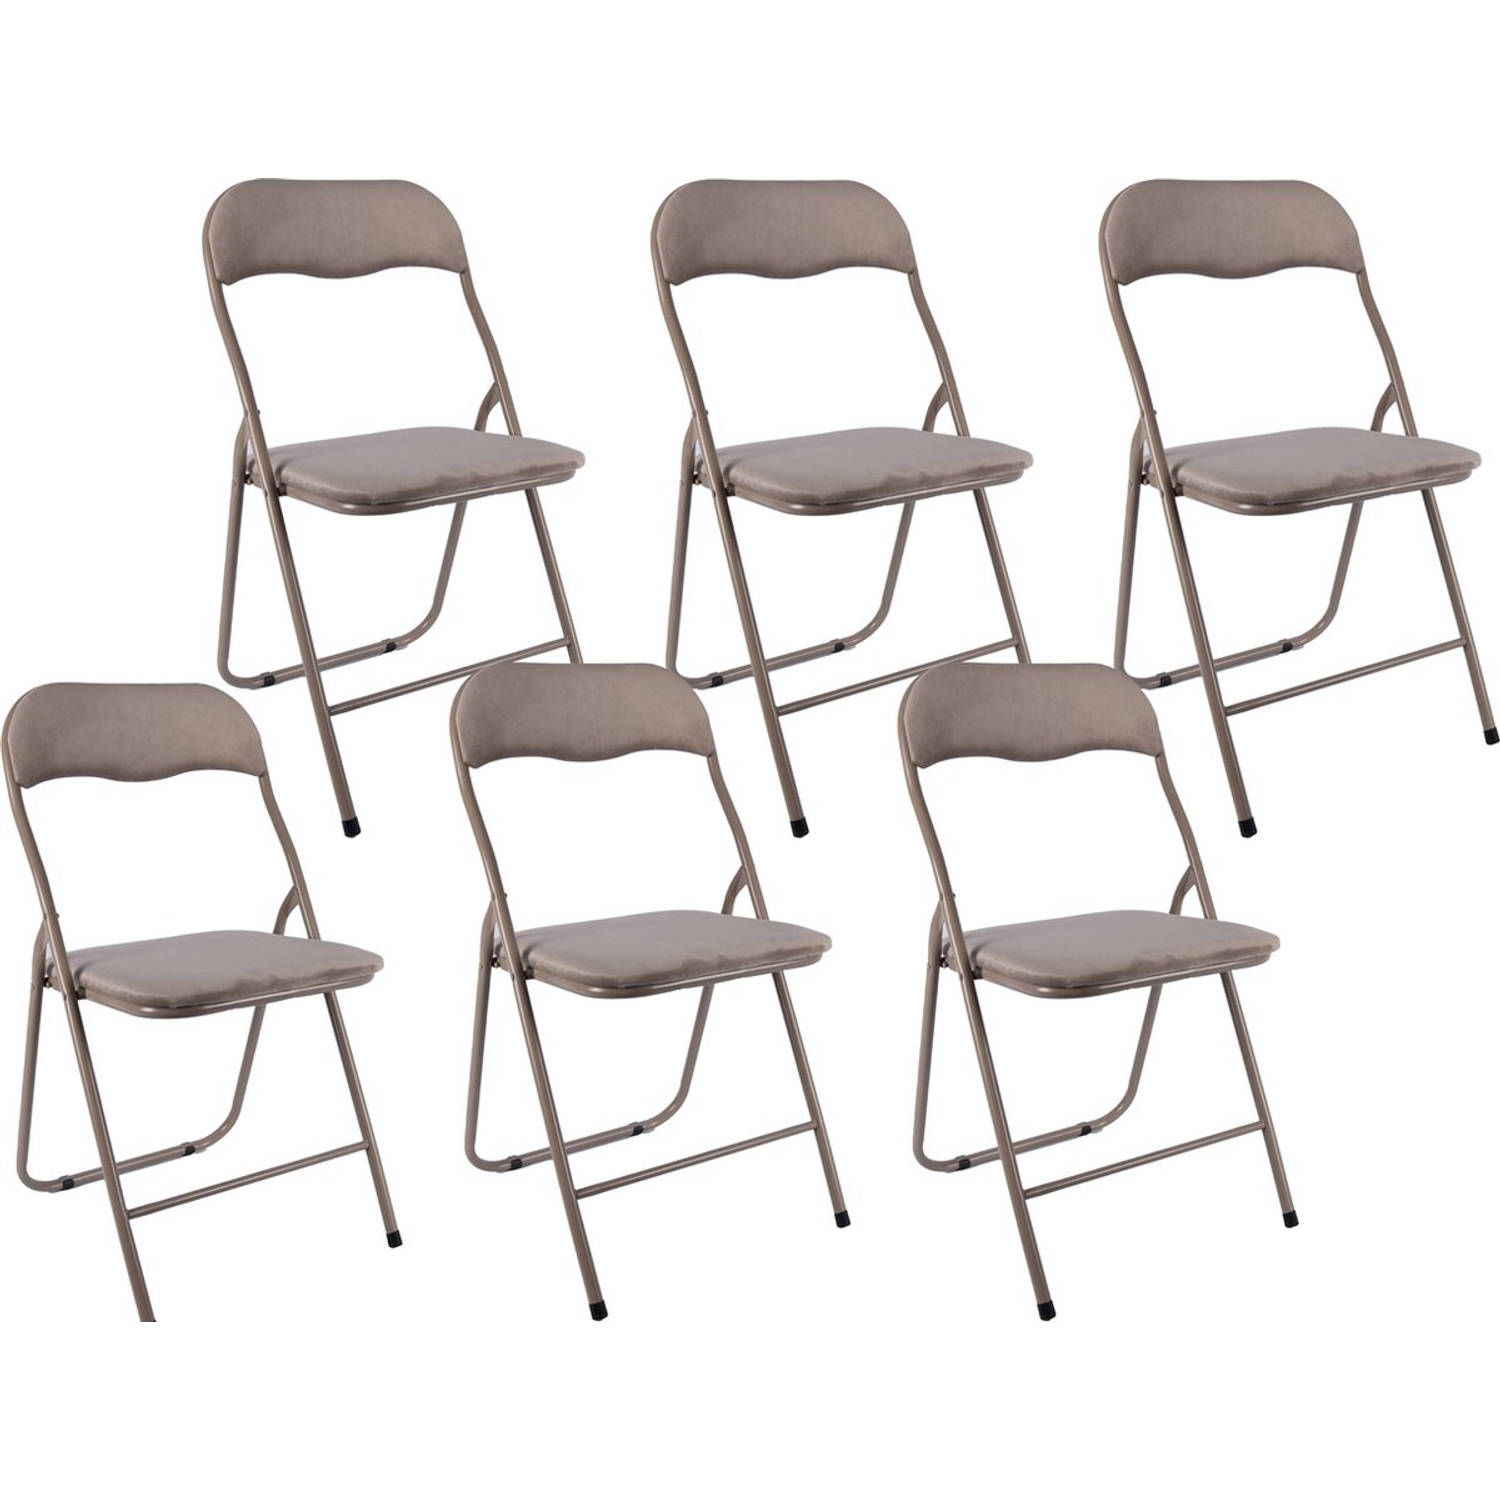 6x Klapstoel met zithoogte van 43 cm Vouwstoel velvet zitvlak en rug bekleed - stoel - tafelstoel- tafelstoel - klapstoel - Velvet klapstoel - Luxe klapstoel - Met kussentjes - Sto